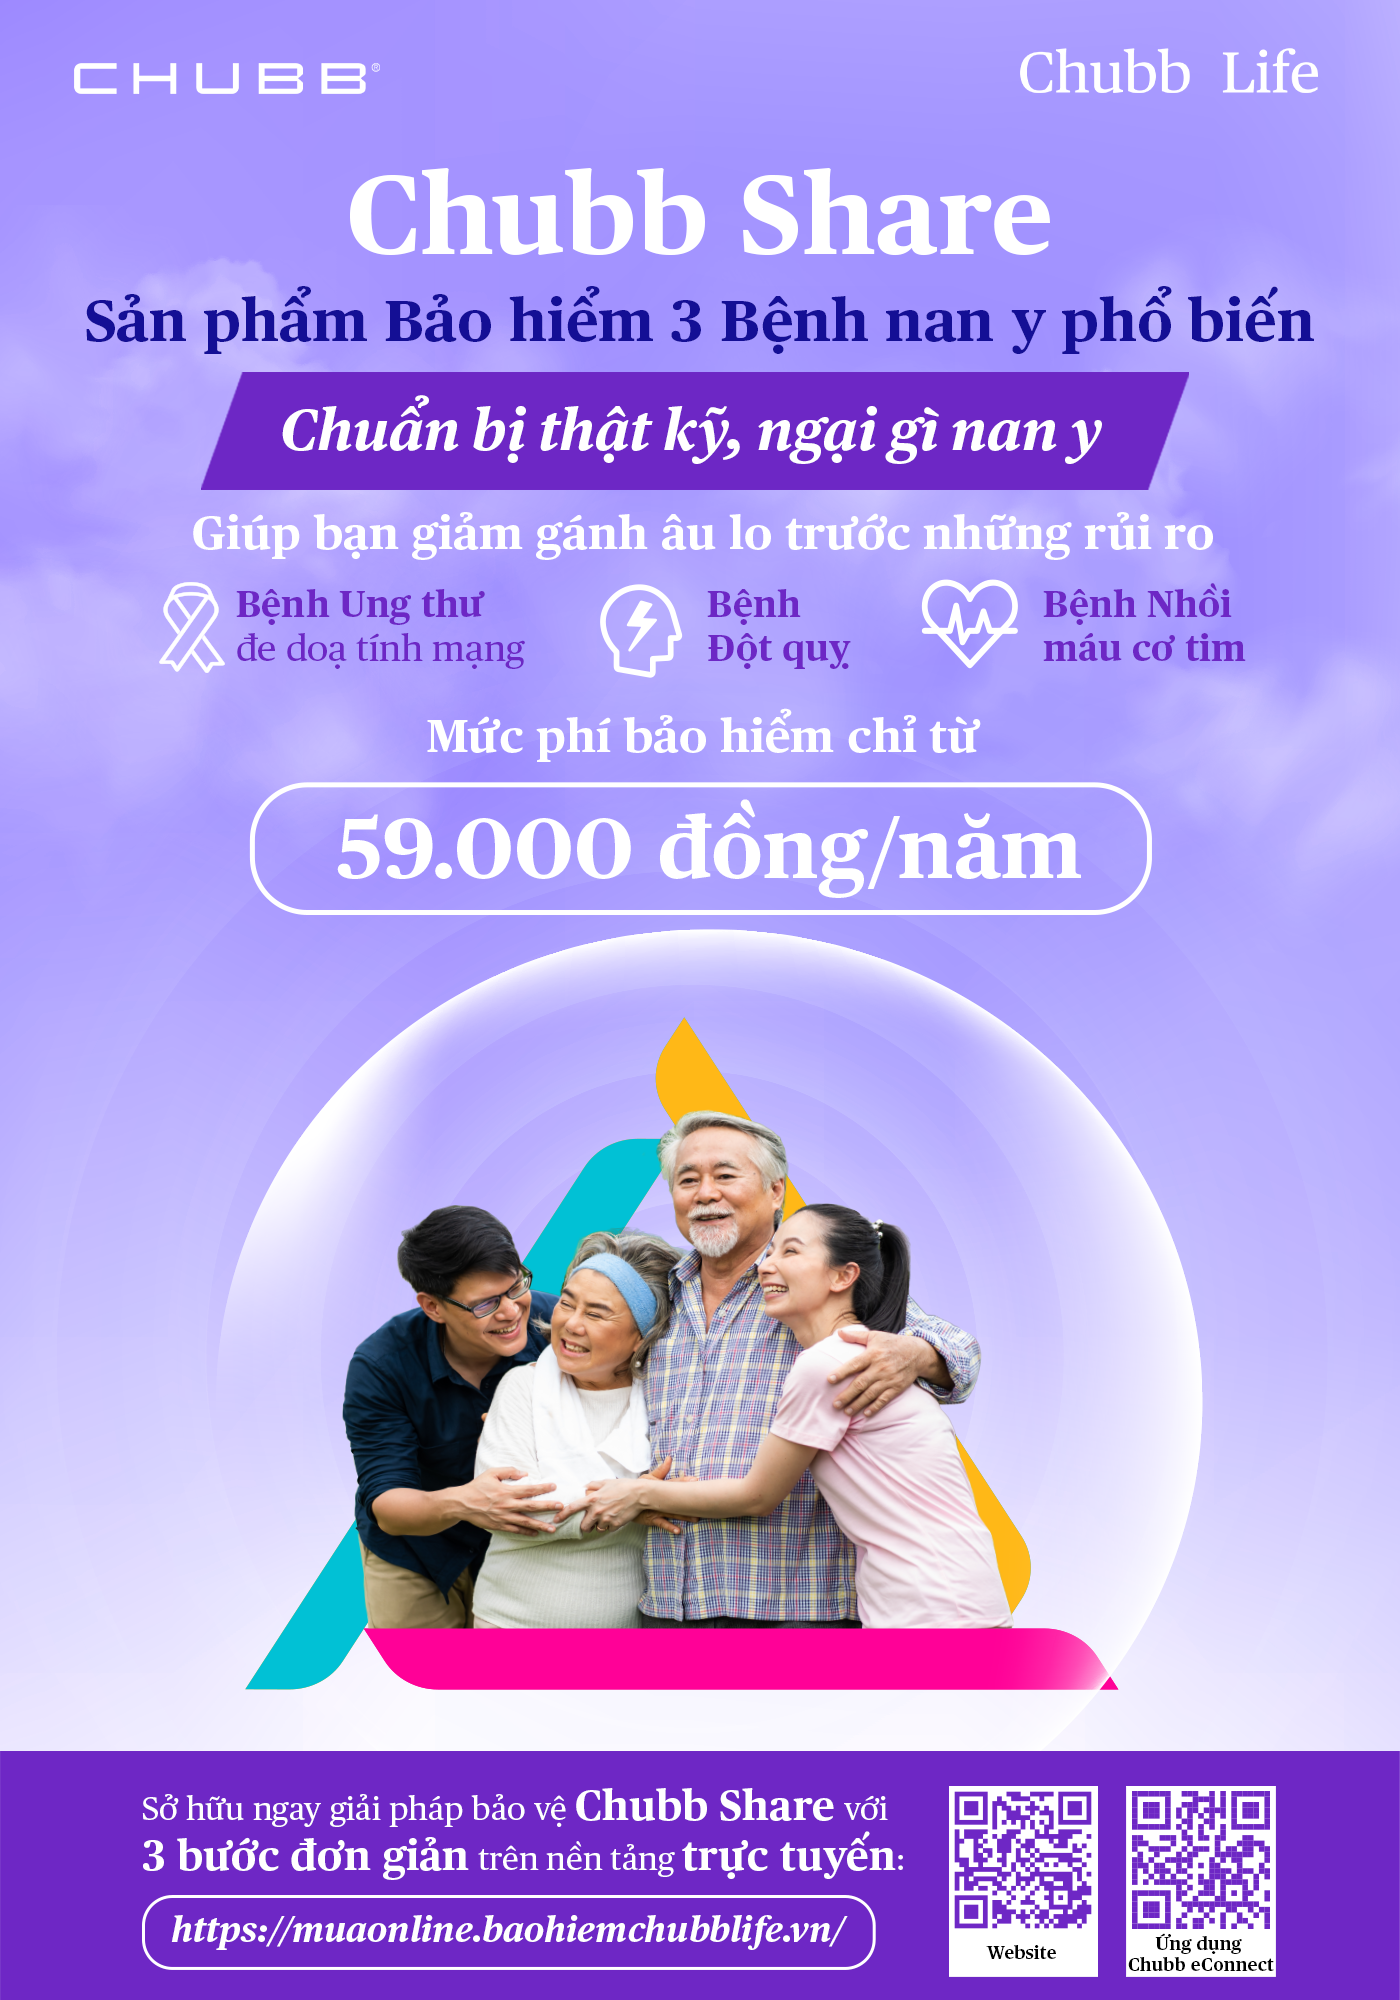 Chubb Life Việt Nam ra mắt 2 giải pháp bảo hiểm sức khỏe và tai nạn mới trên nền tảng trực tuyến - Ảnh 2.